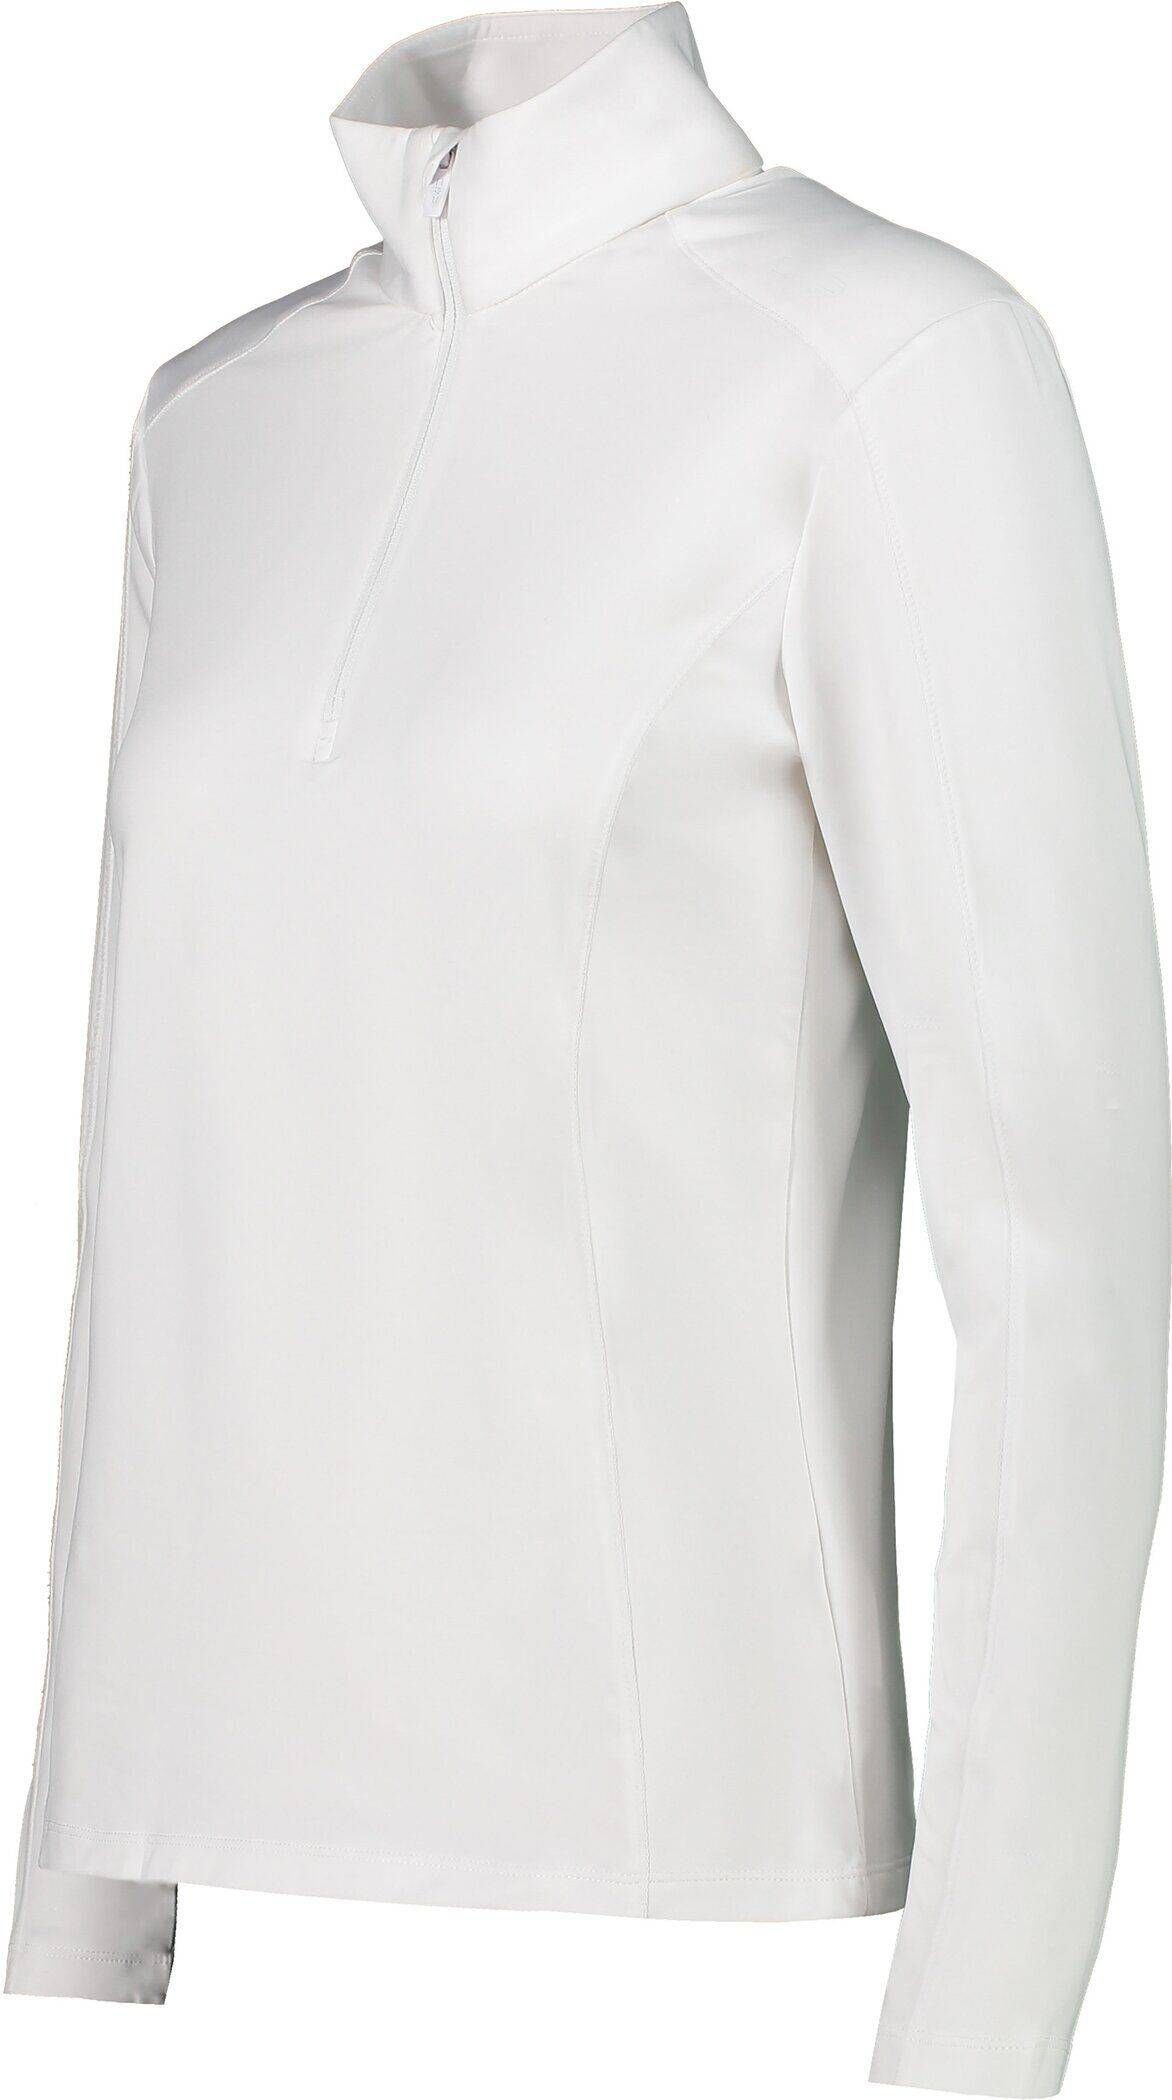 (100) weiß CMP Sweatshirt Trainingsjacke Damen